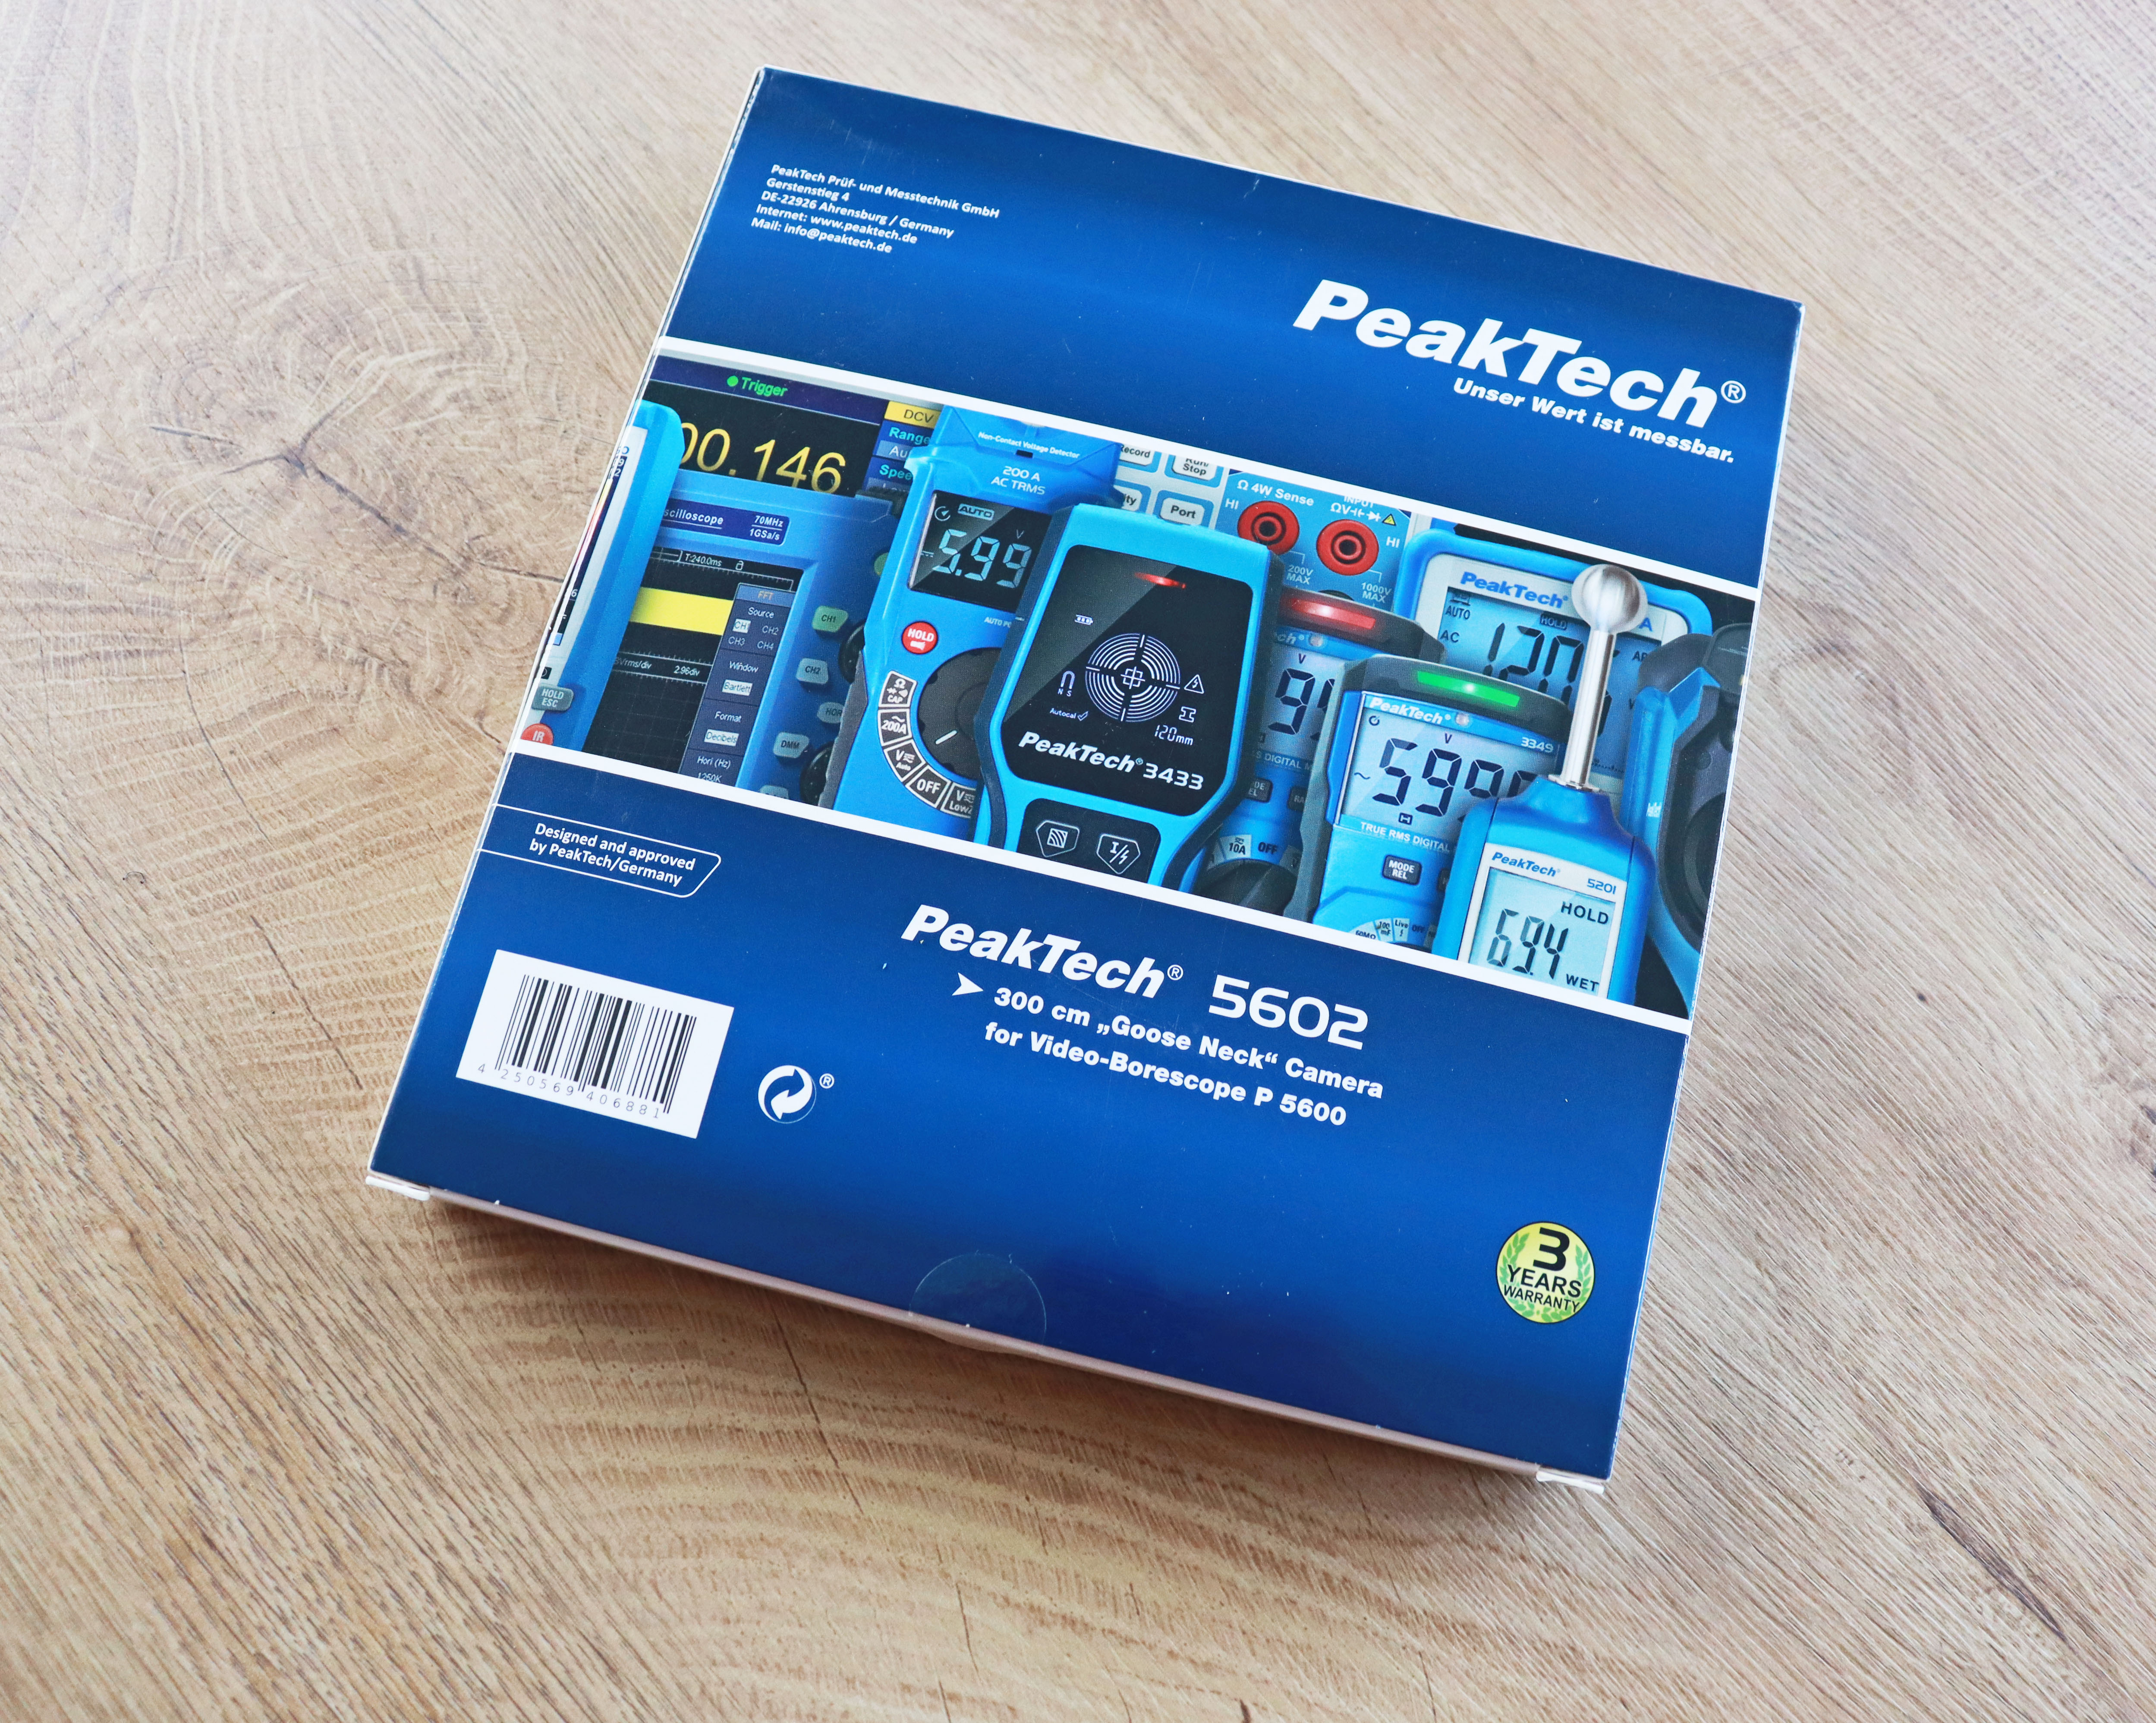 "PeakTech® P 5602" Dodatkowa kamera z 3-metrową gęsią szyją do PeakTech 5600